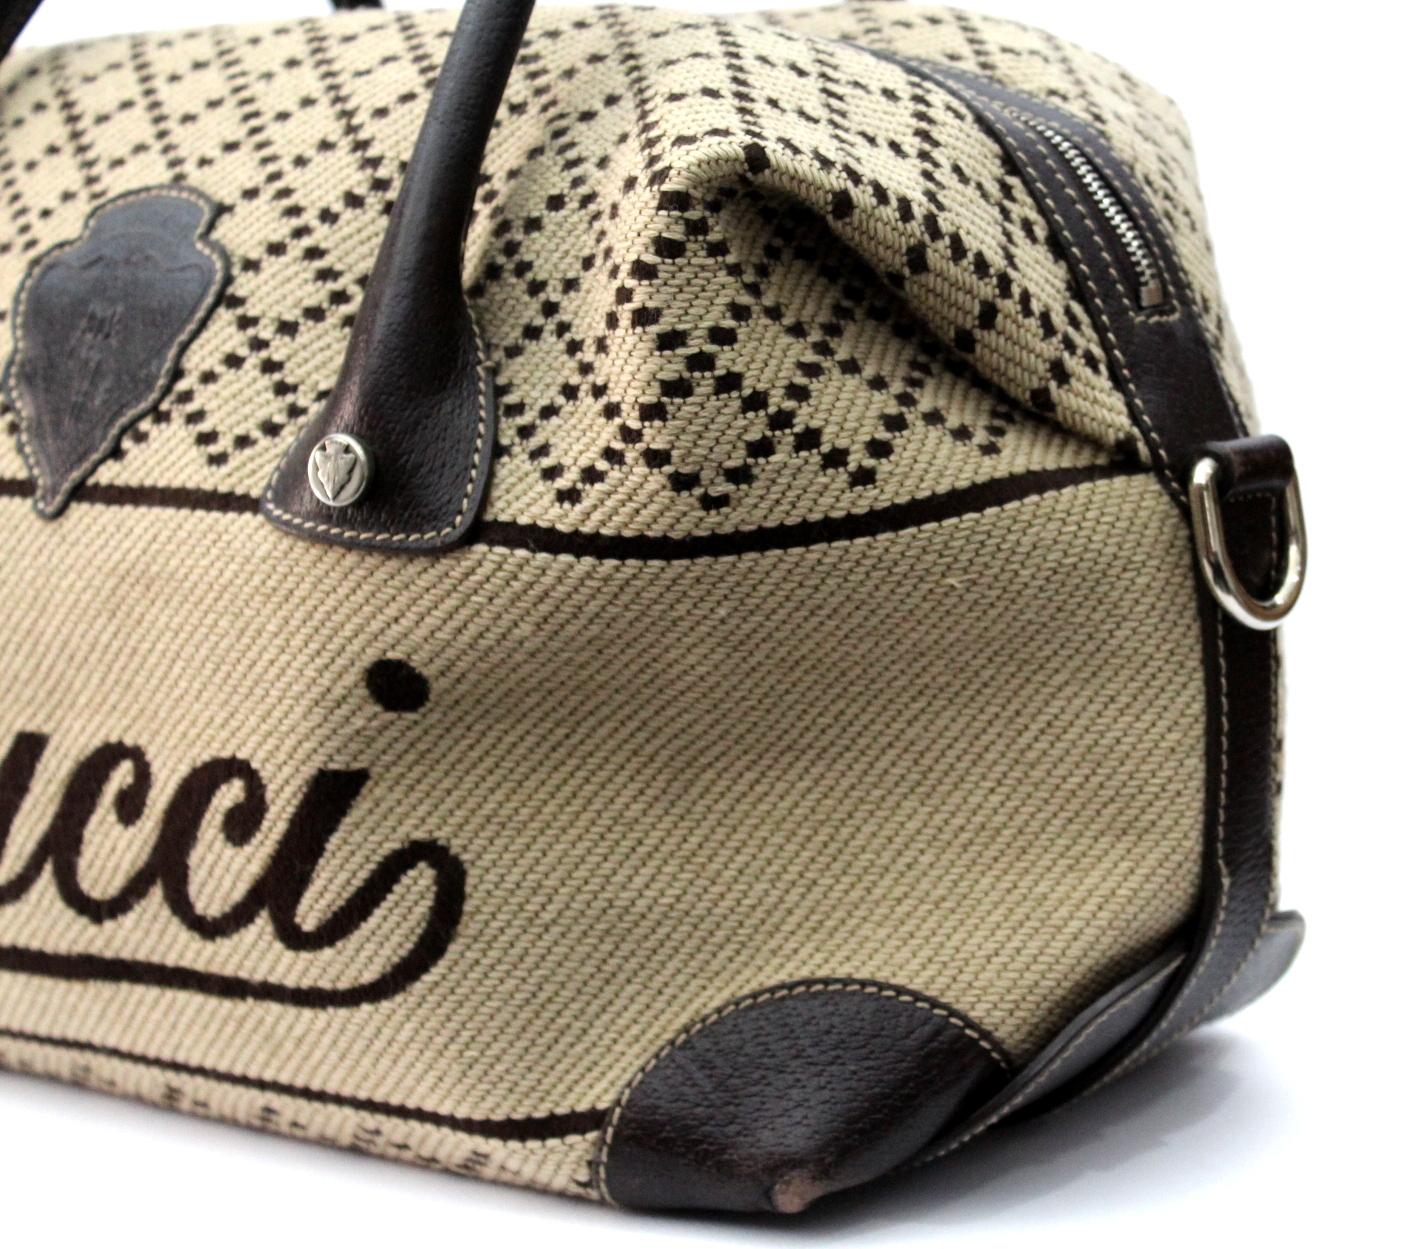 Women's Gucci Beige Top Handle Bag